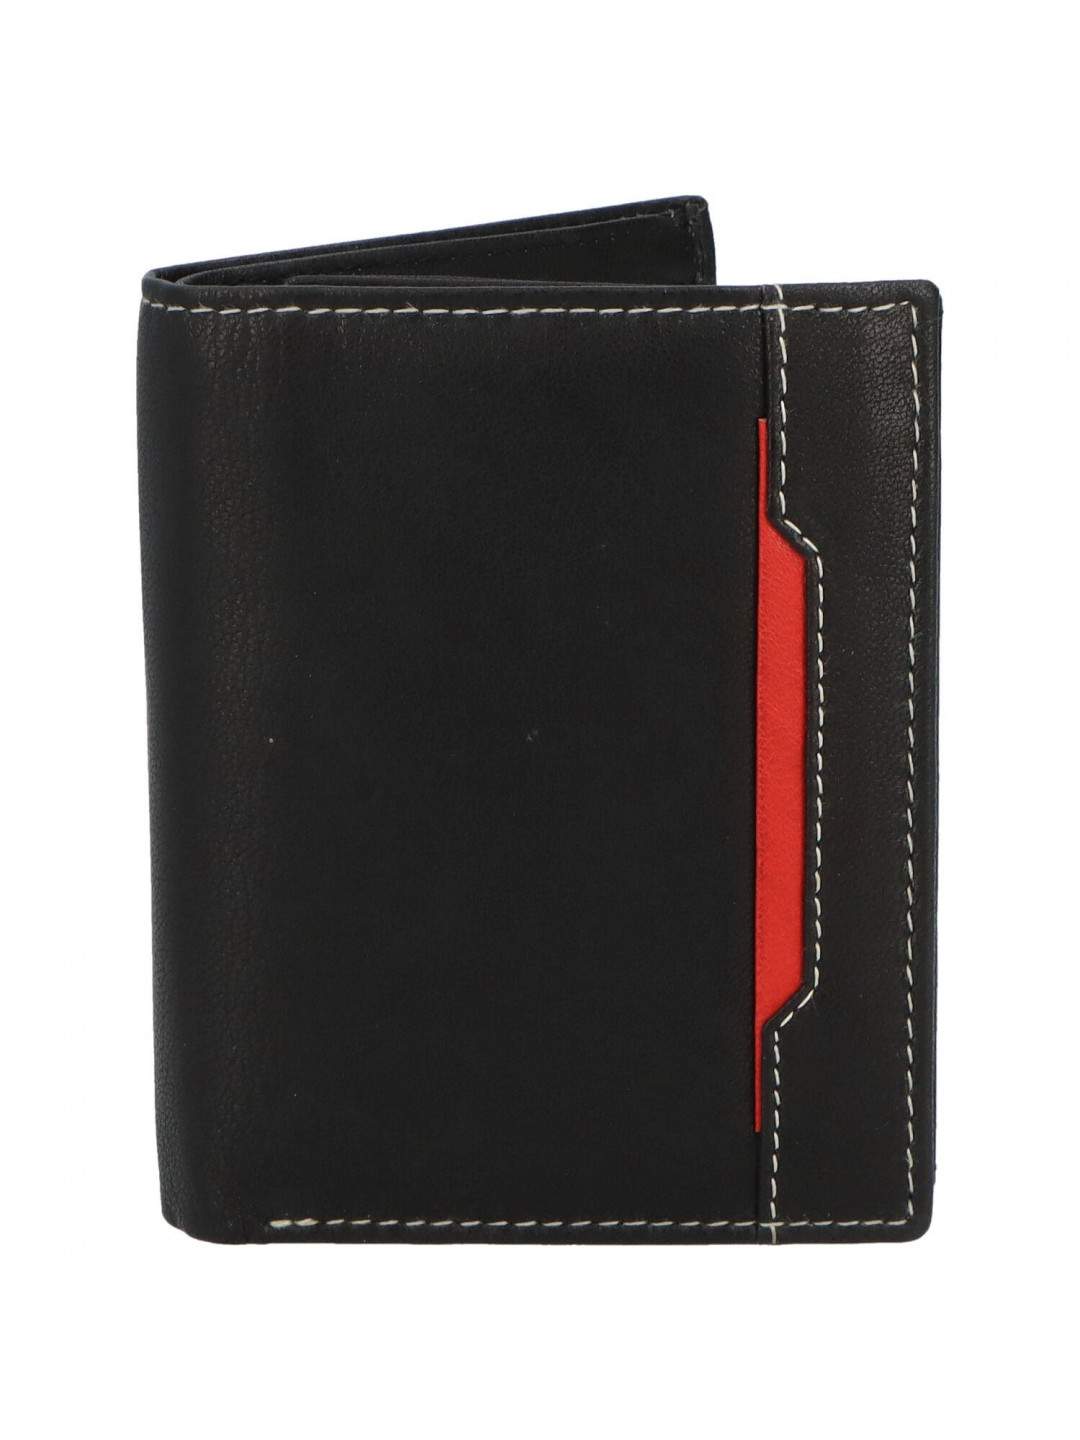 Trendová pánská kožená peněženka Mluko černá – červená